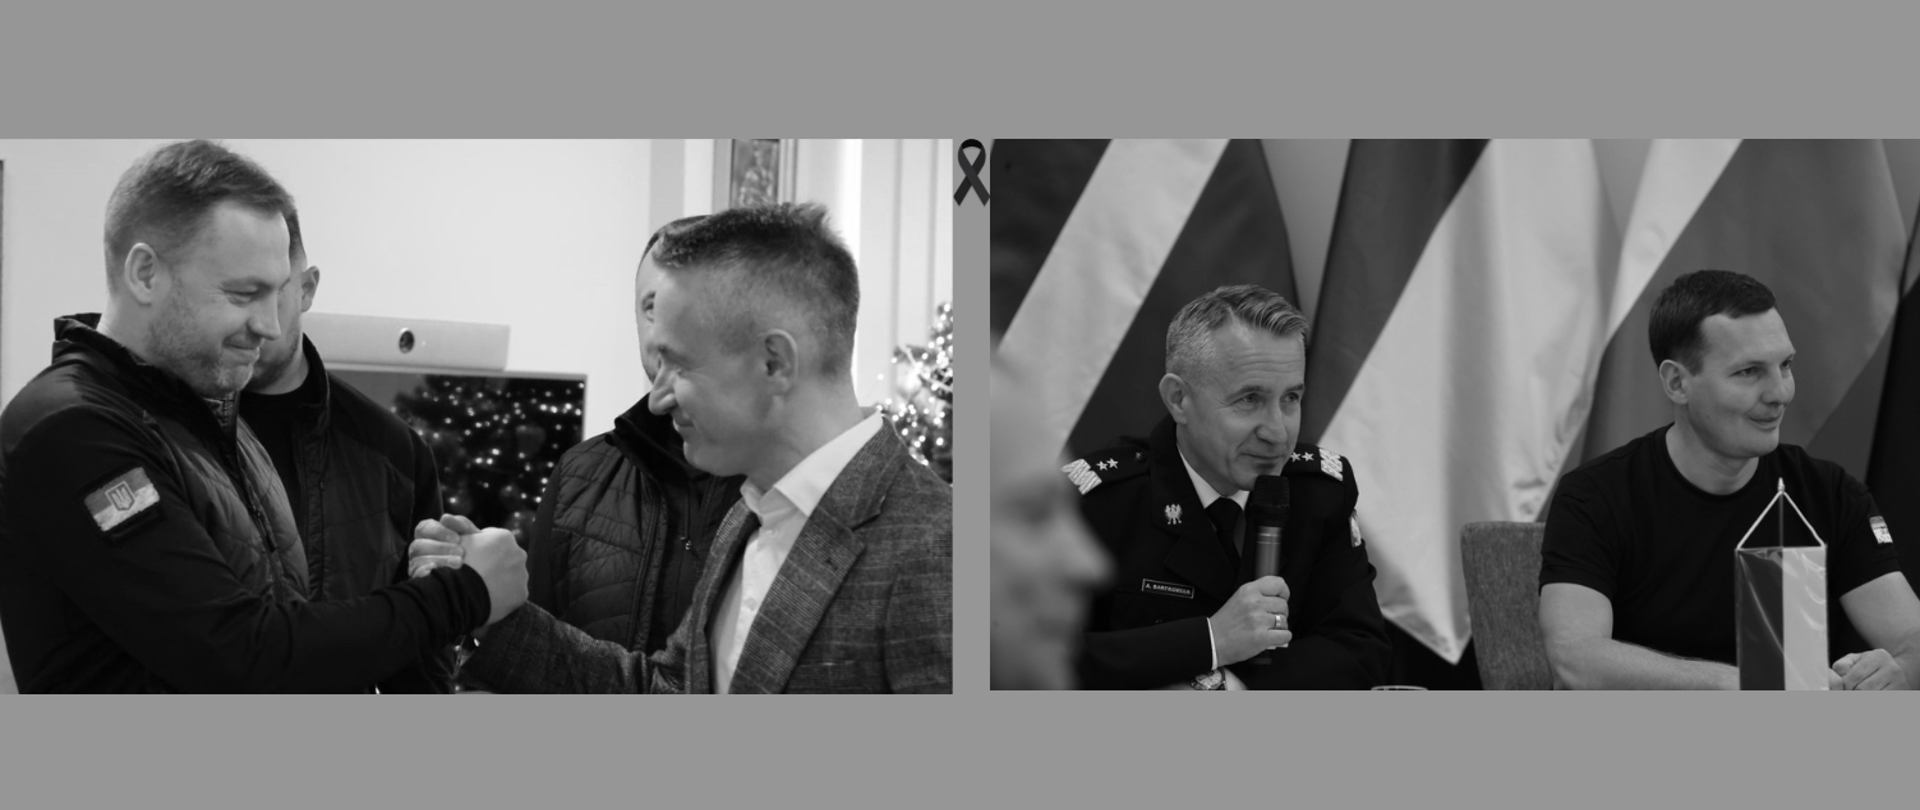 Dwa zdjęcia, po lewej Komendant Główny PSP wraz z tragicznie zmarłym ministrem Spraw Wewn. Ukrainy, po prawo Komendant Główny PSP wraz z tragicznie zmarłym wiceministrem Spraw Wewn. Ukrainy